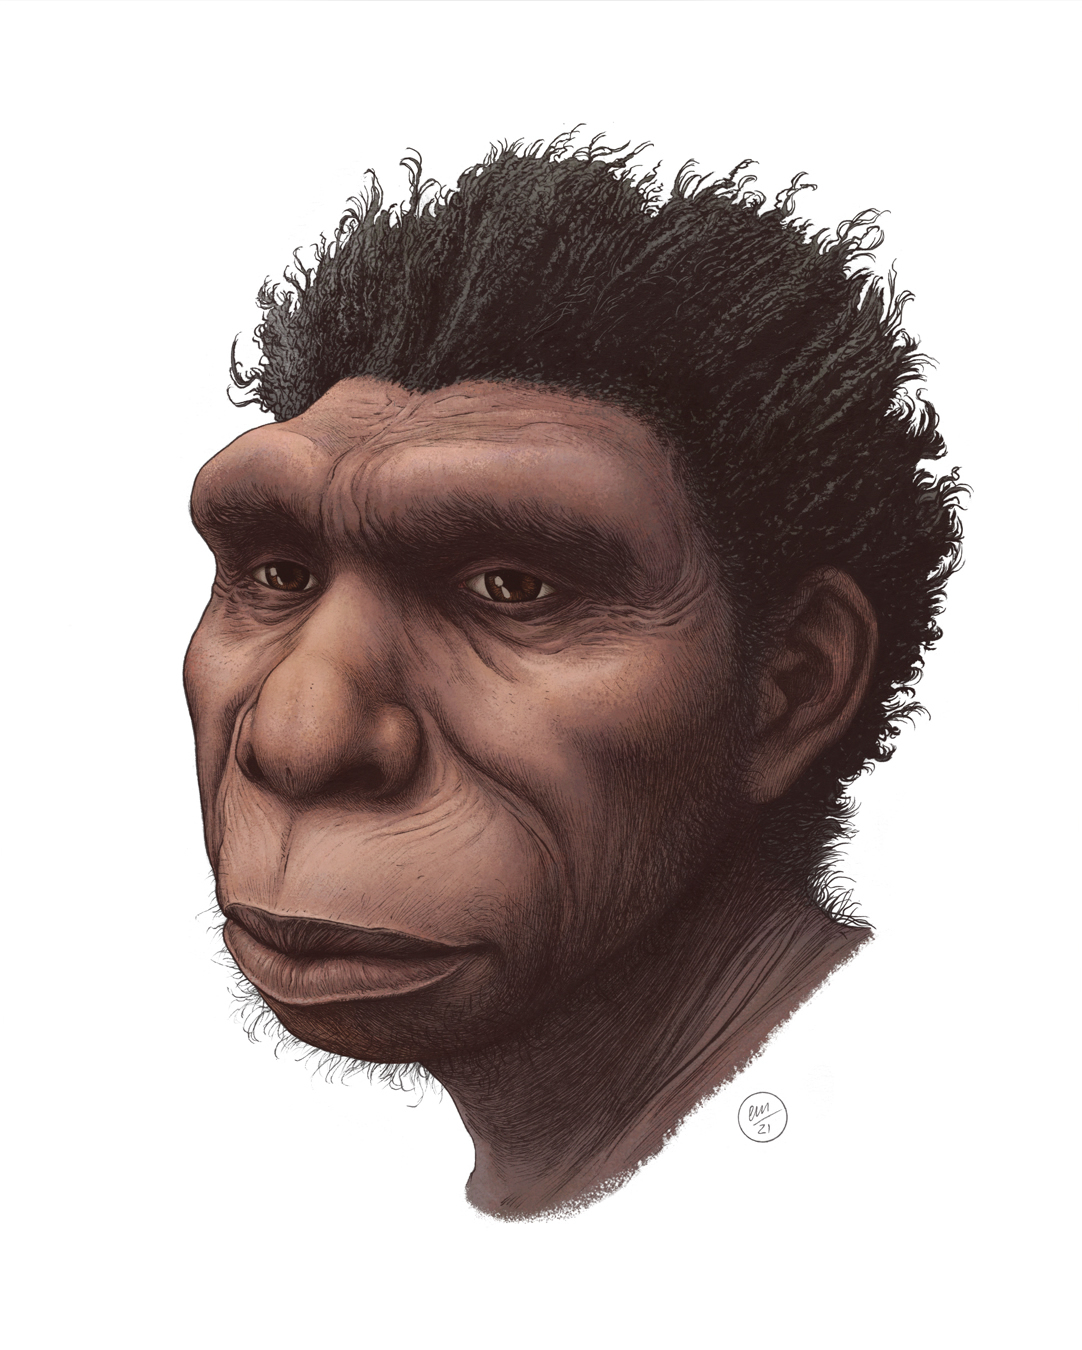 生活在50万年前中更新世时期非洲的新人种“博多人”或是现代人类直系祖先